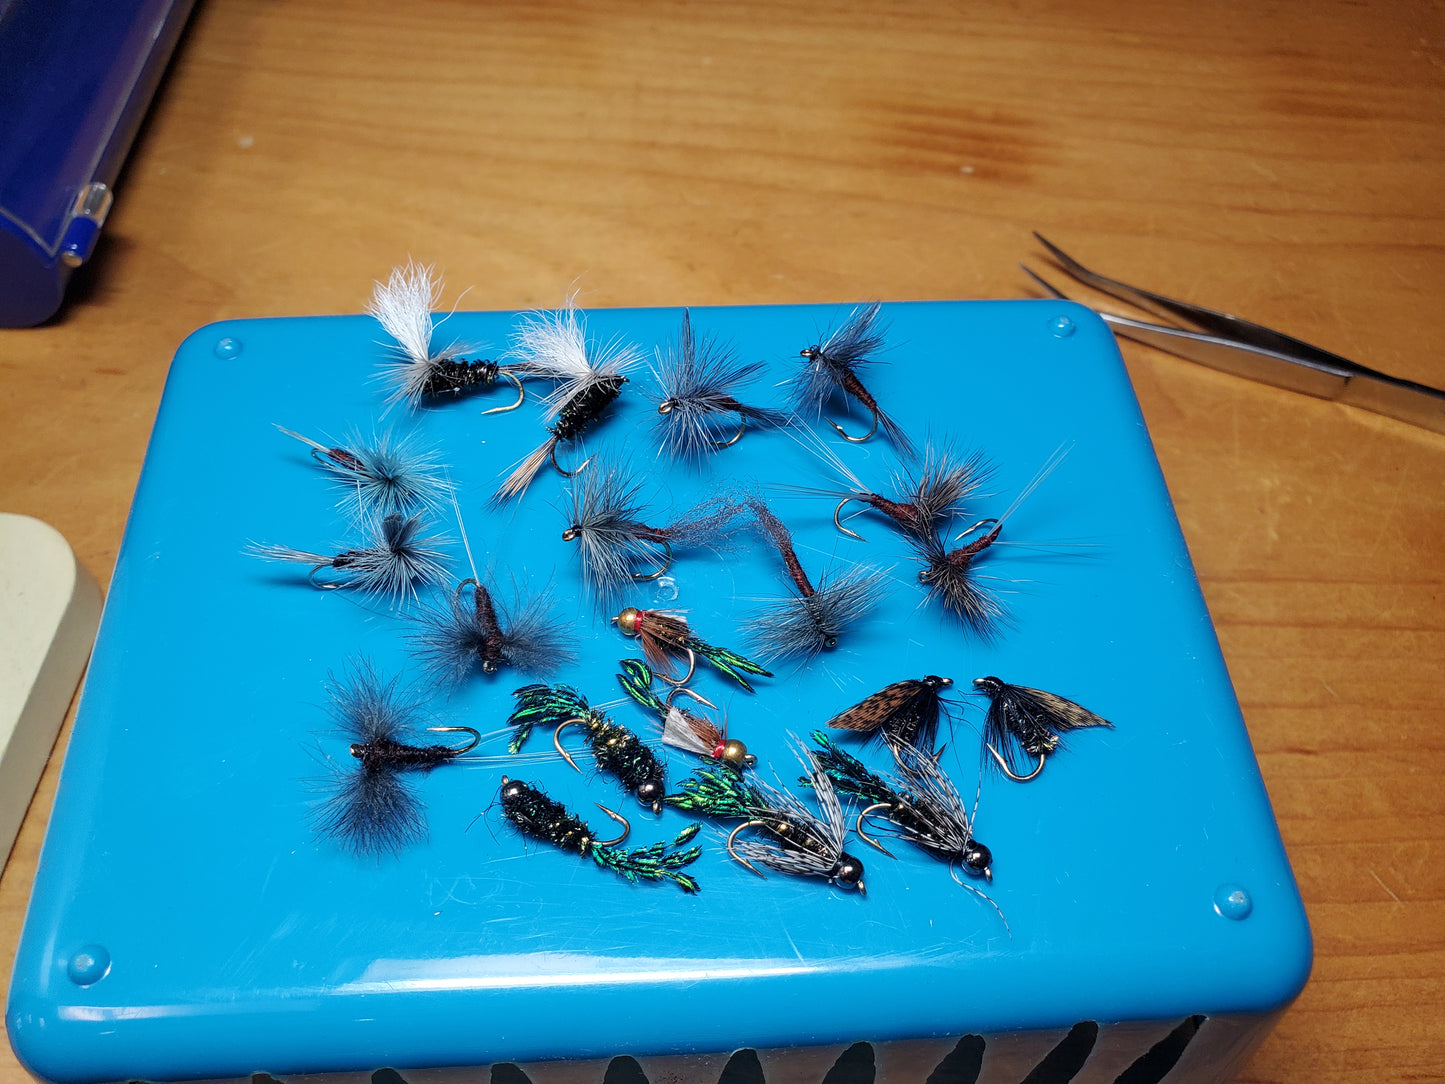 Isonychia Life Cycle Fly Selection, Isonychia Dry Fly, Isonychia Nymph, Slate Drake, Isonychia Emerger 20 Flies